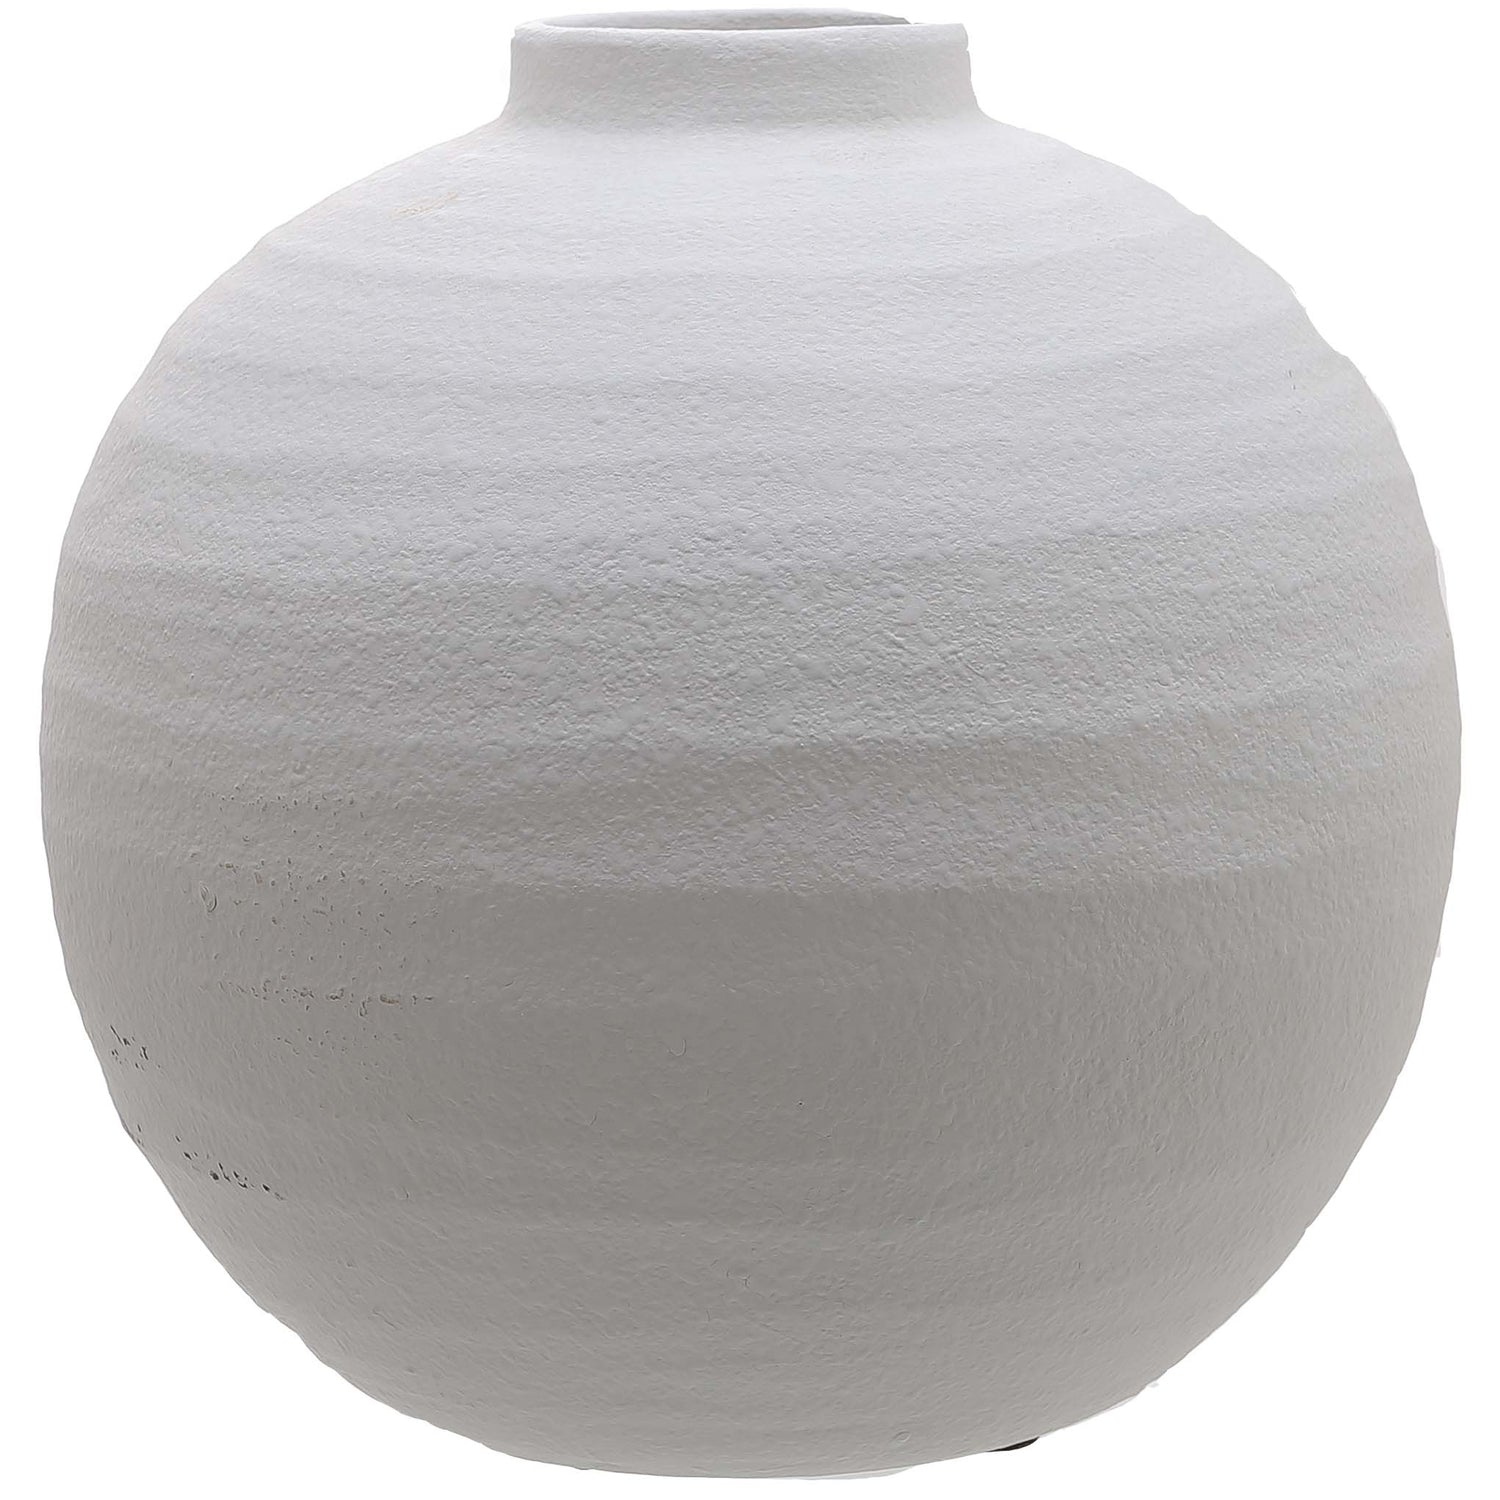 View Tiber Matt White Ceramic Vase information